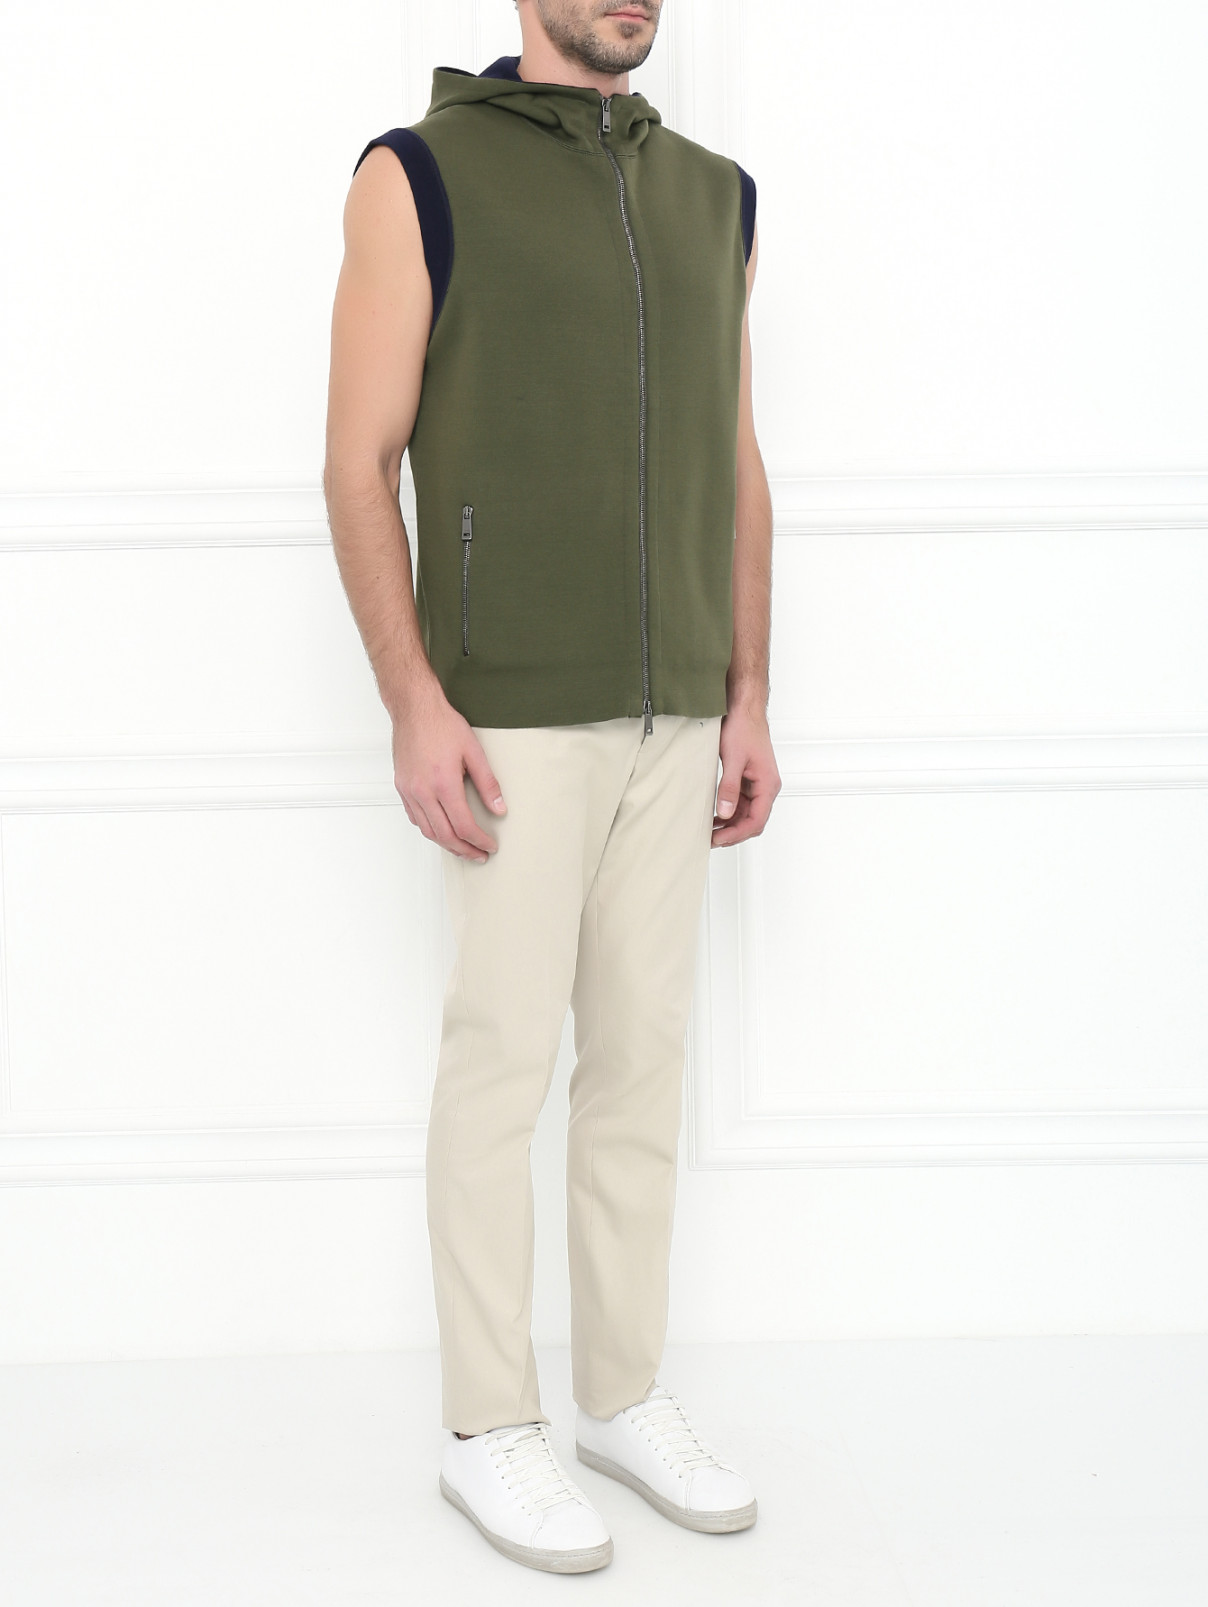 Джемпер из хлопка без рукавов Jil Sander  –  Модель Общий вид  – Цвет:  Зеленый